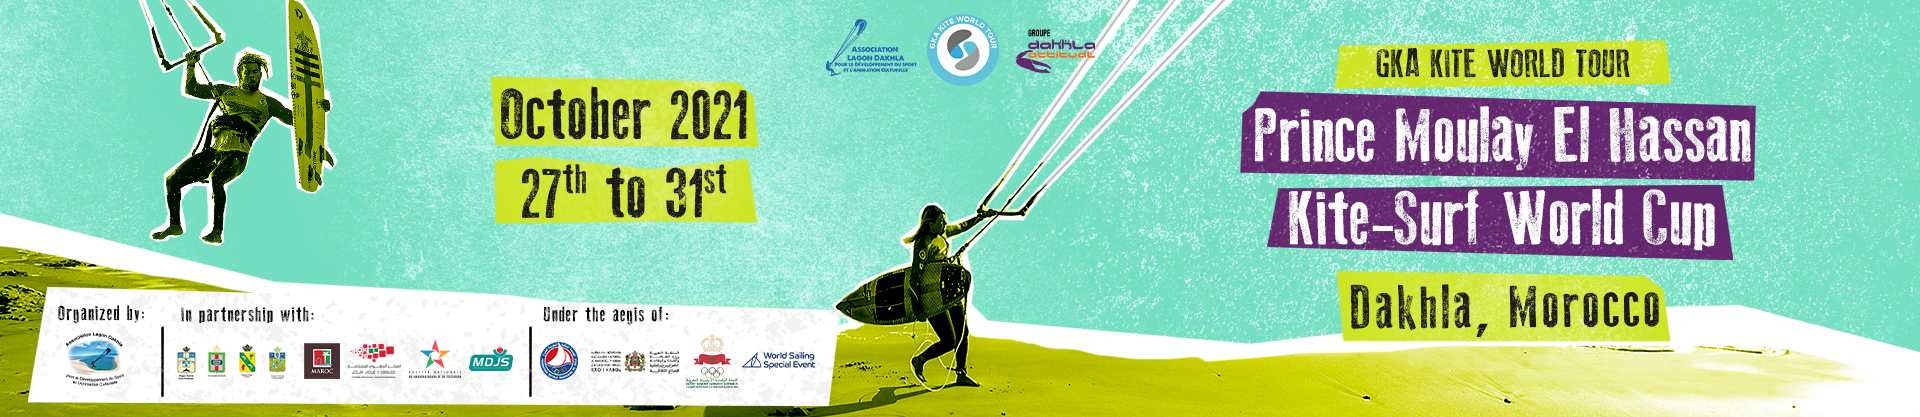 Image for GKA Kite-Surf World Cup Morocco 2021